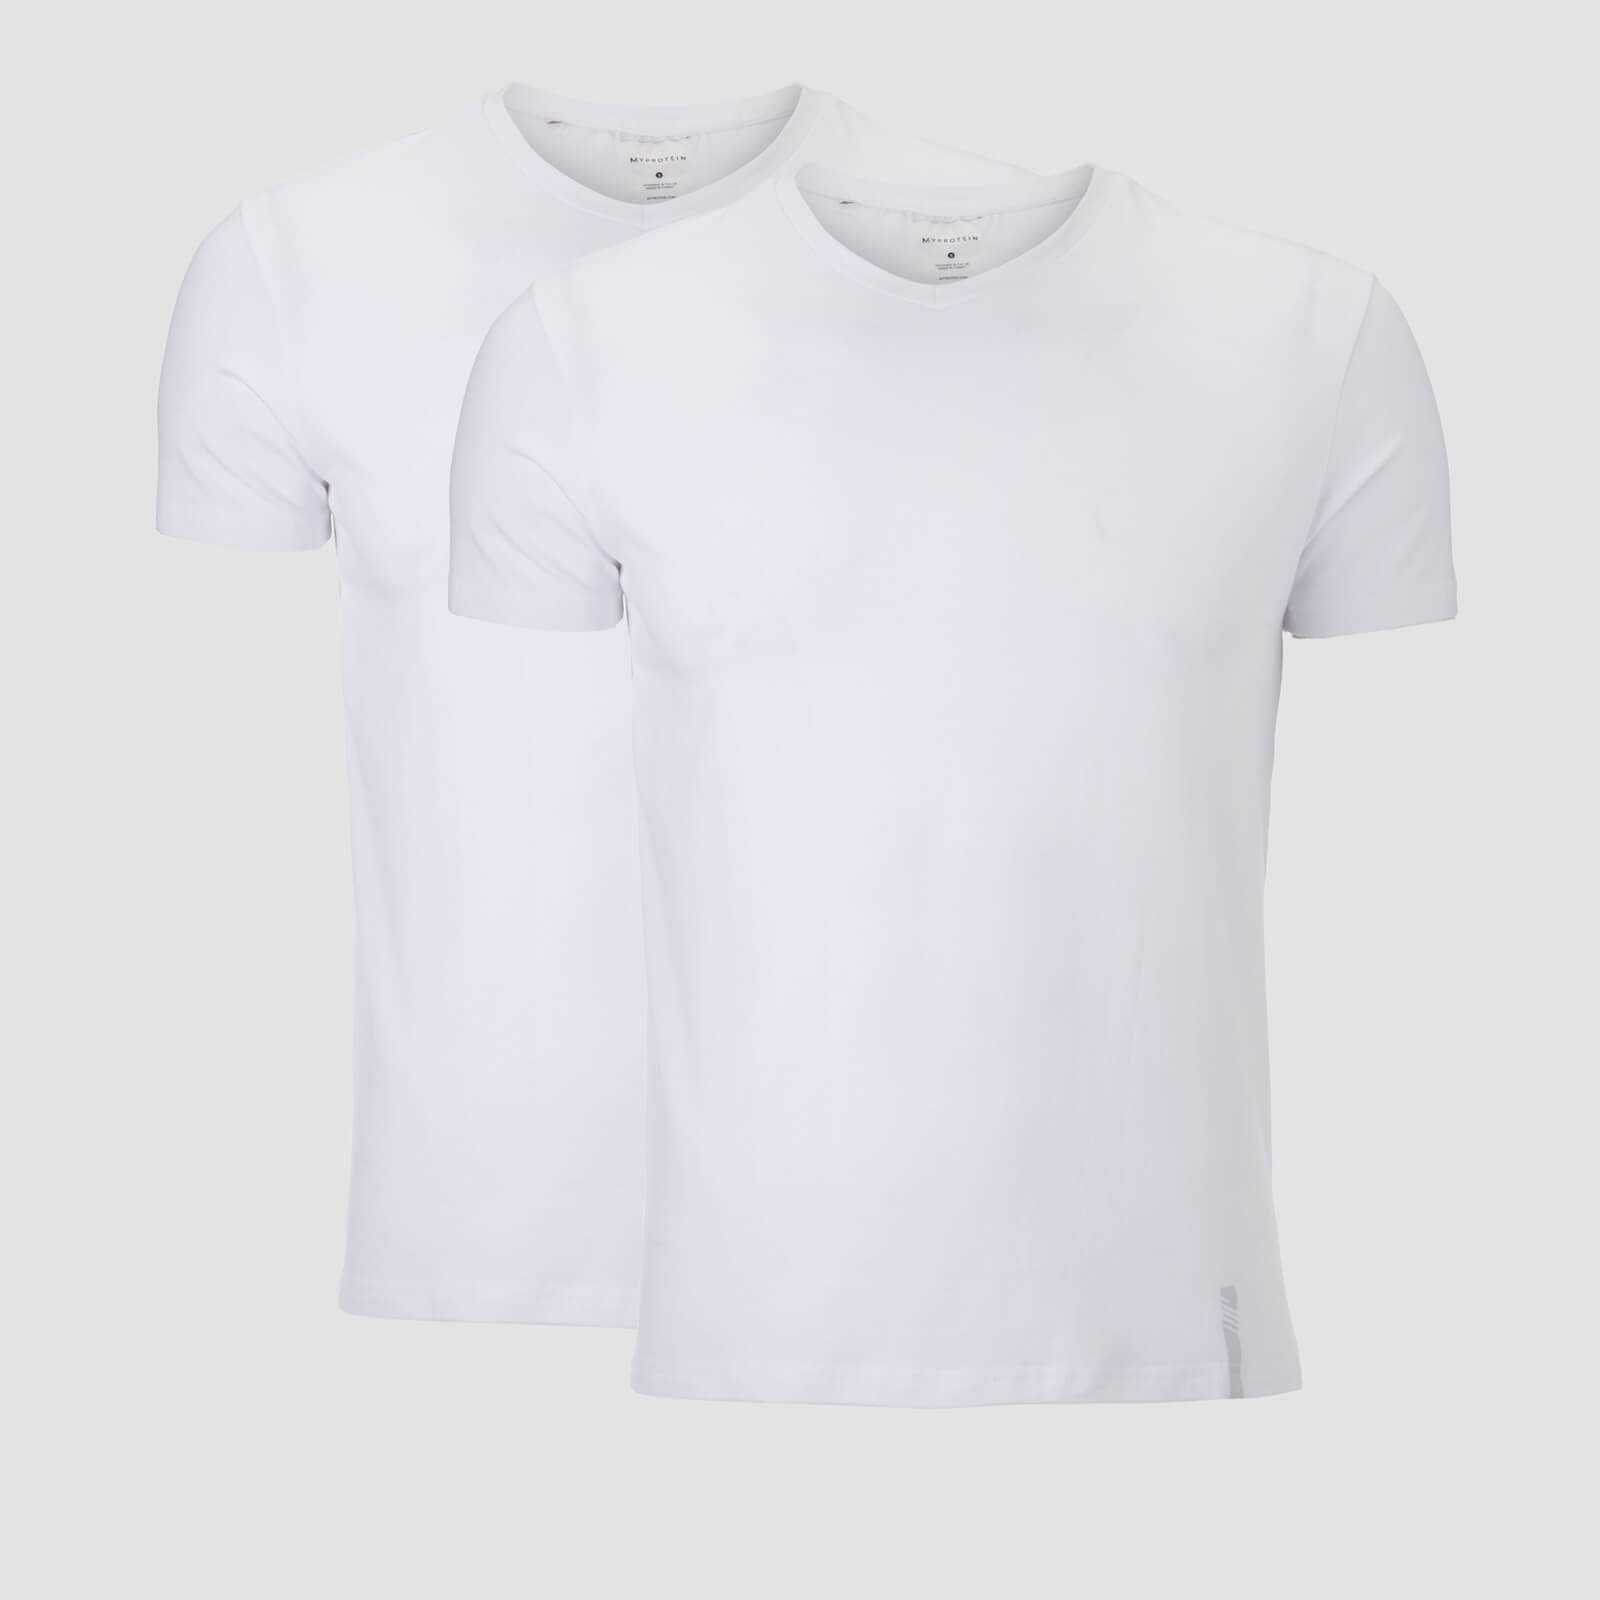 MP Men's Luxe Classic V-Neck T-Shirt - White/White (2 Pack)